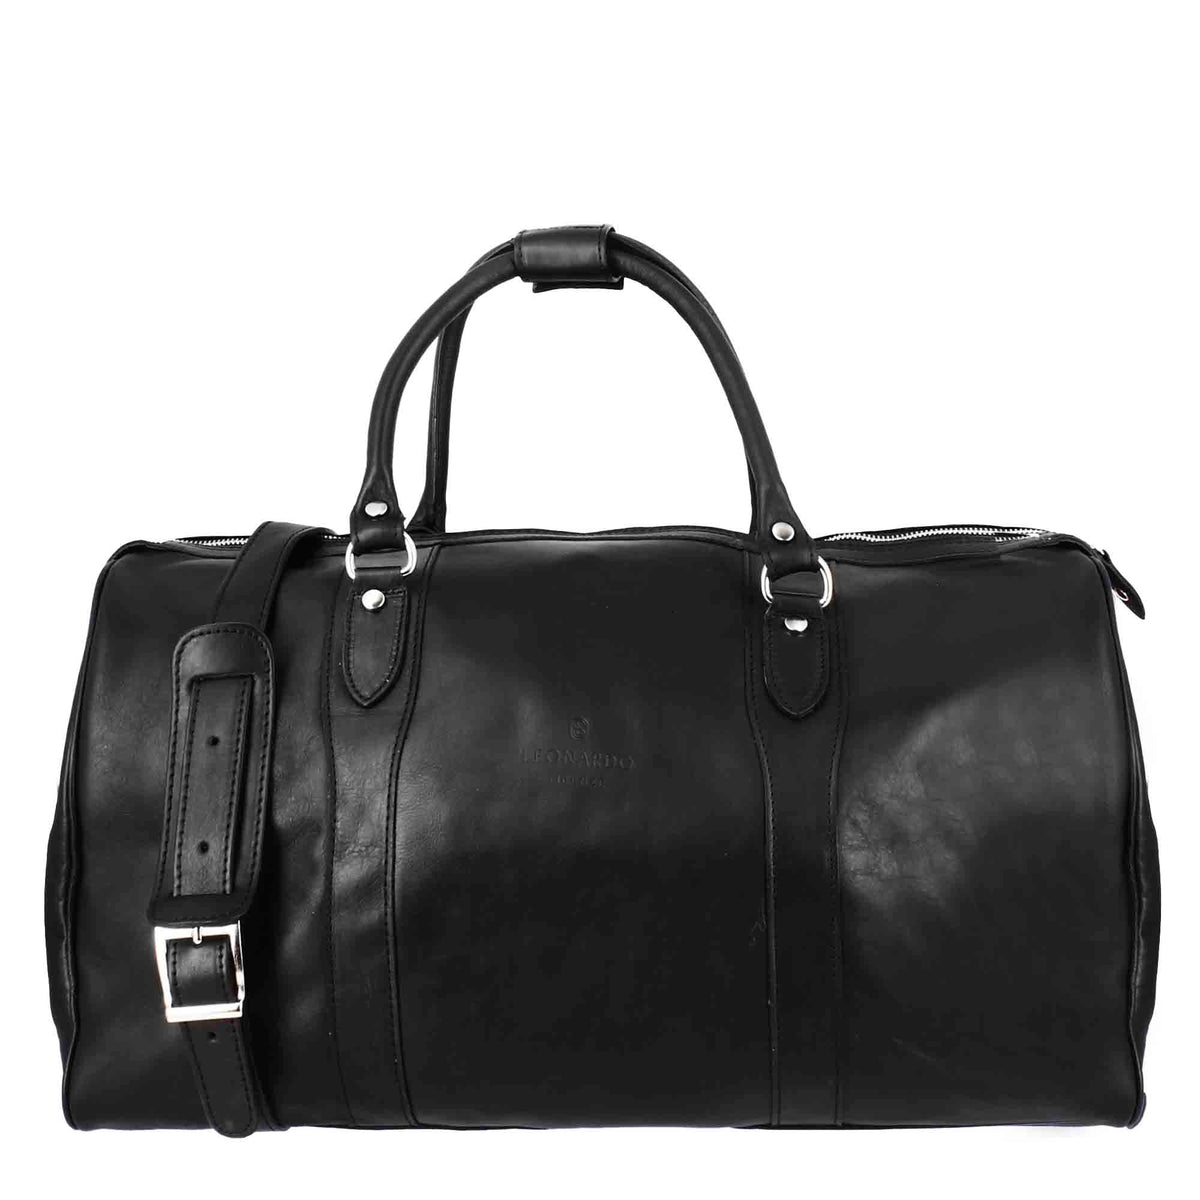 Black leather travel bag with shoulder strap